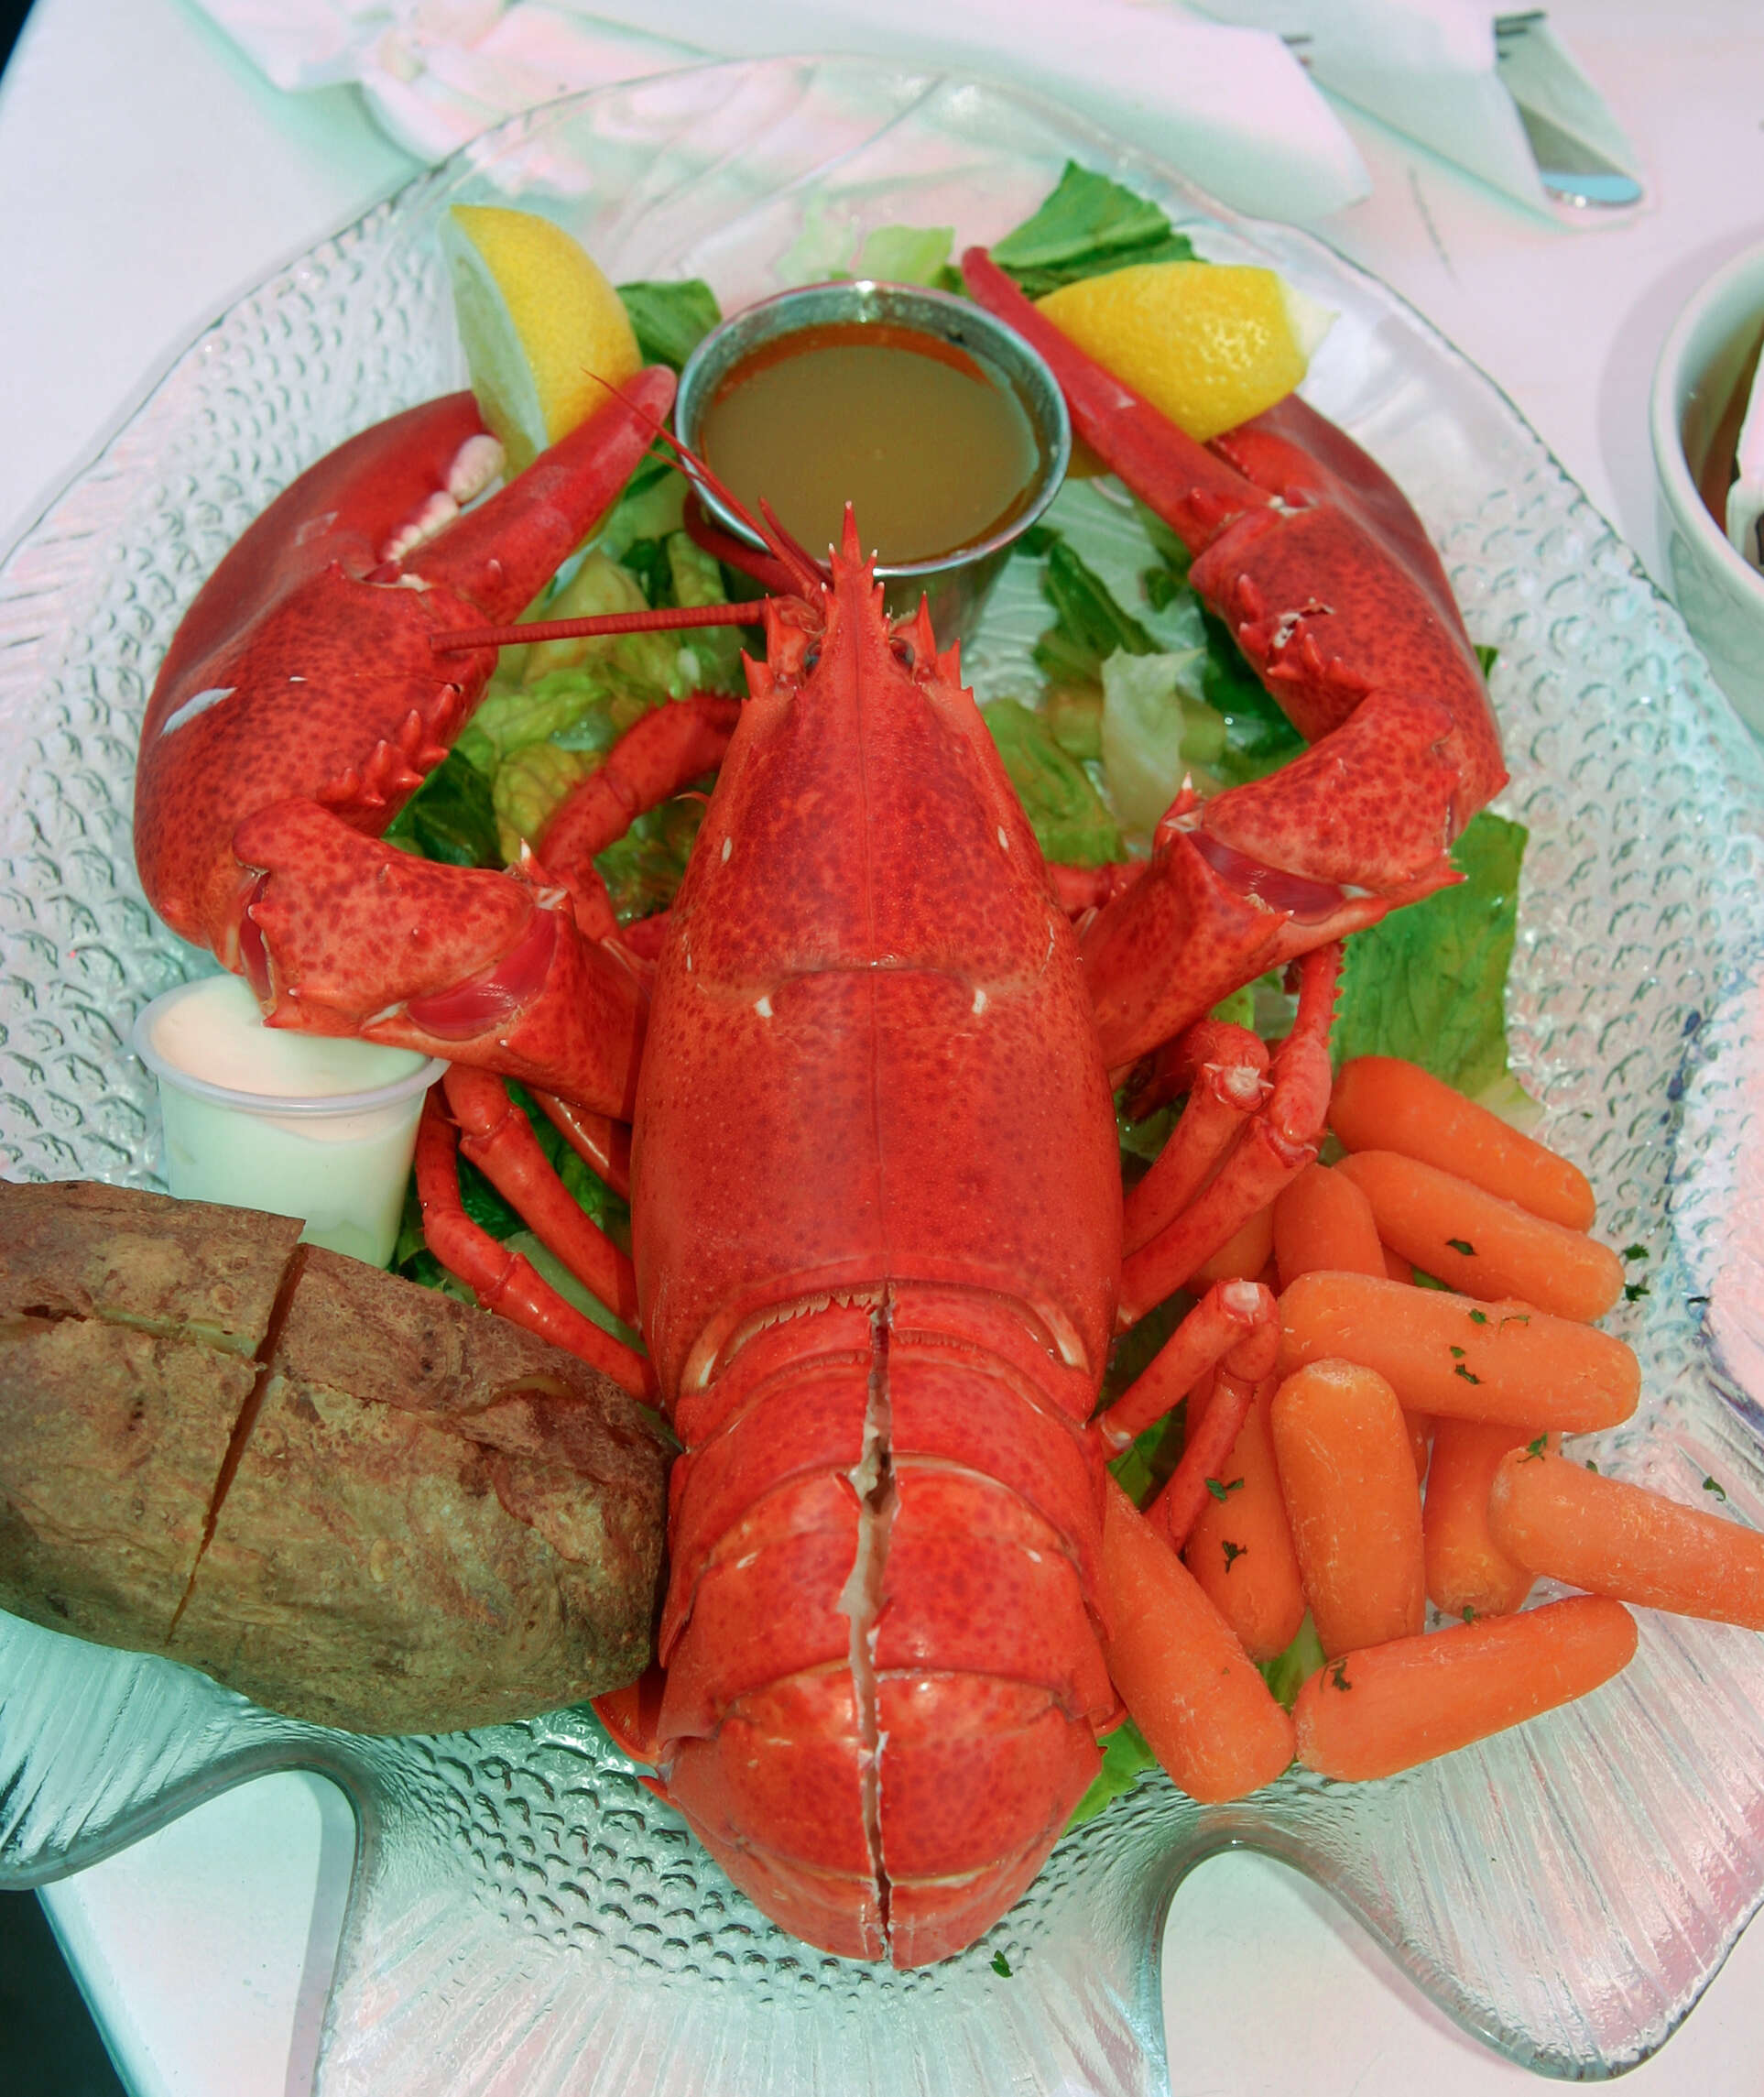 Image of True Lobsters